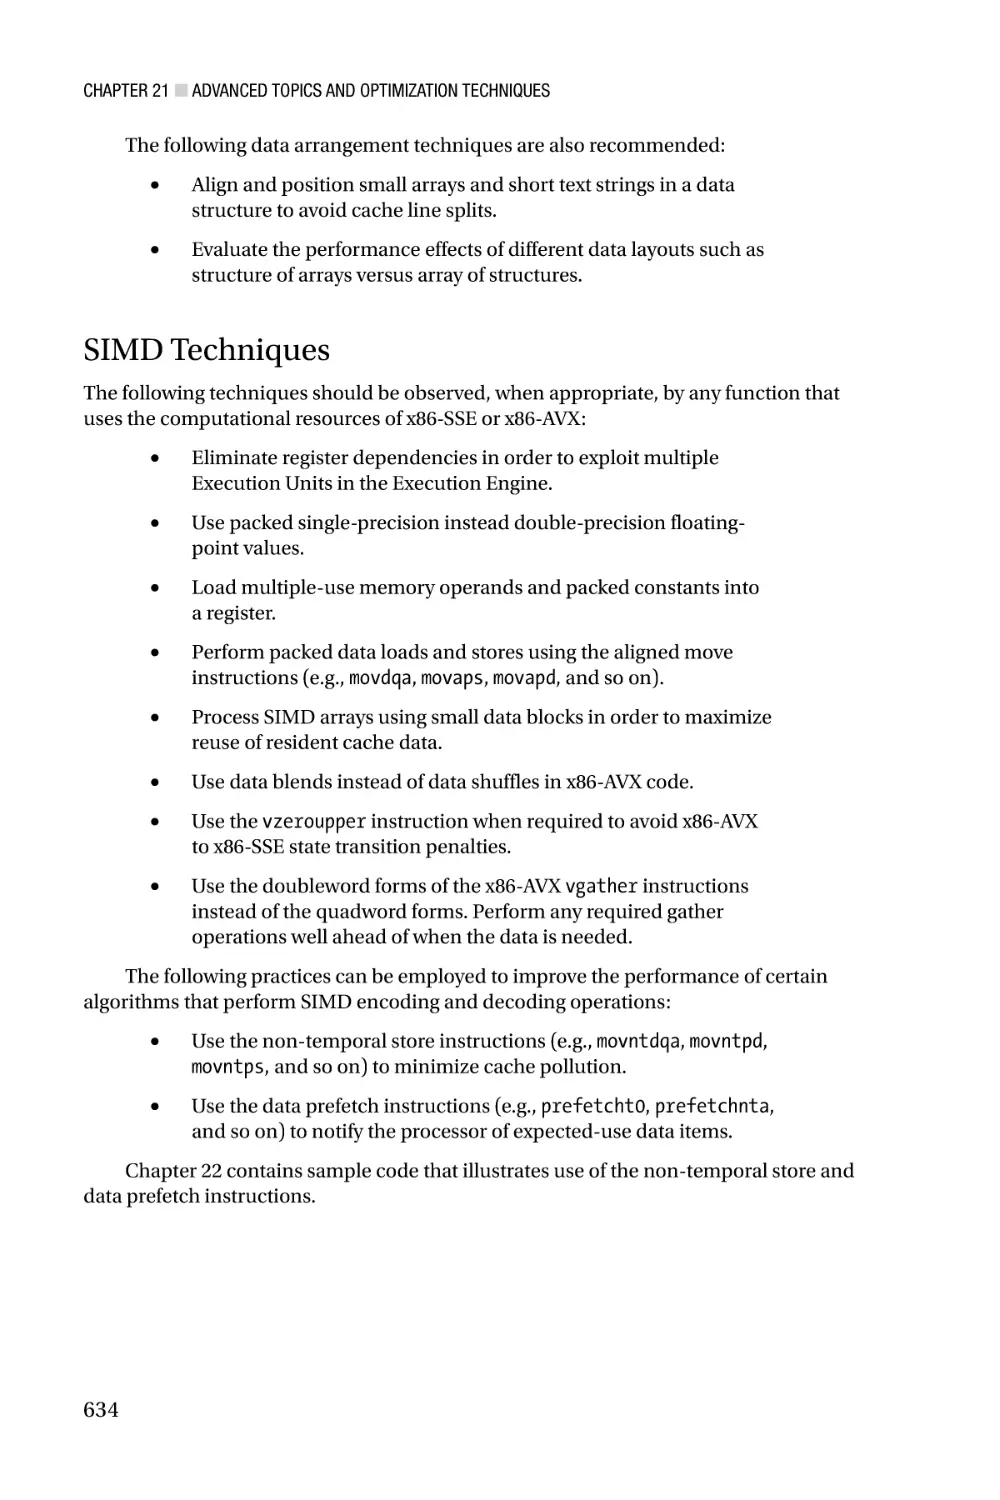 SIMD Techniques